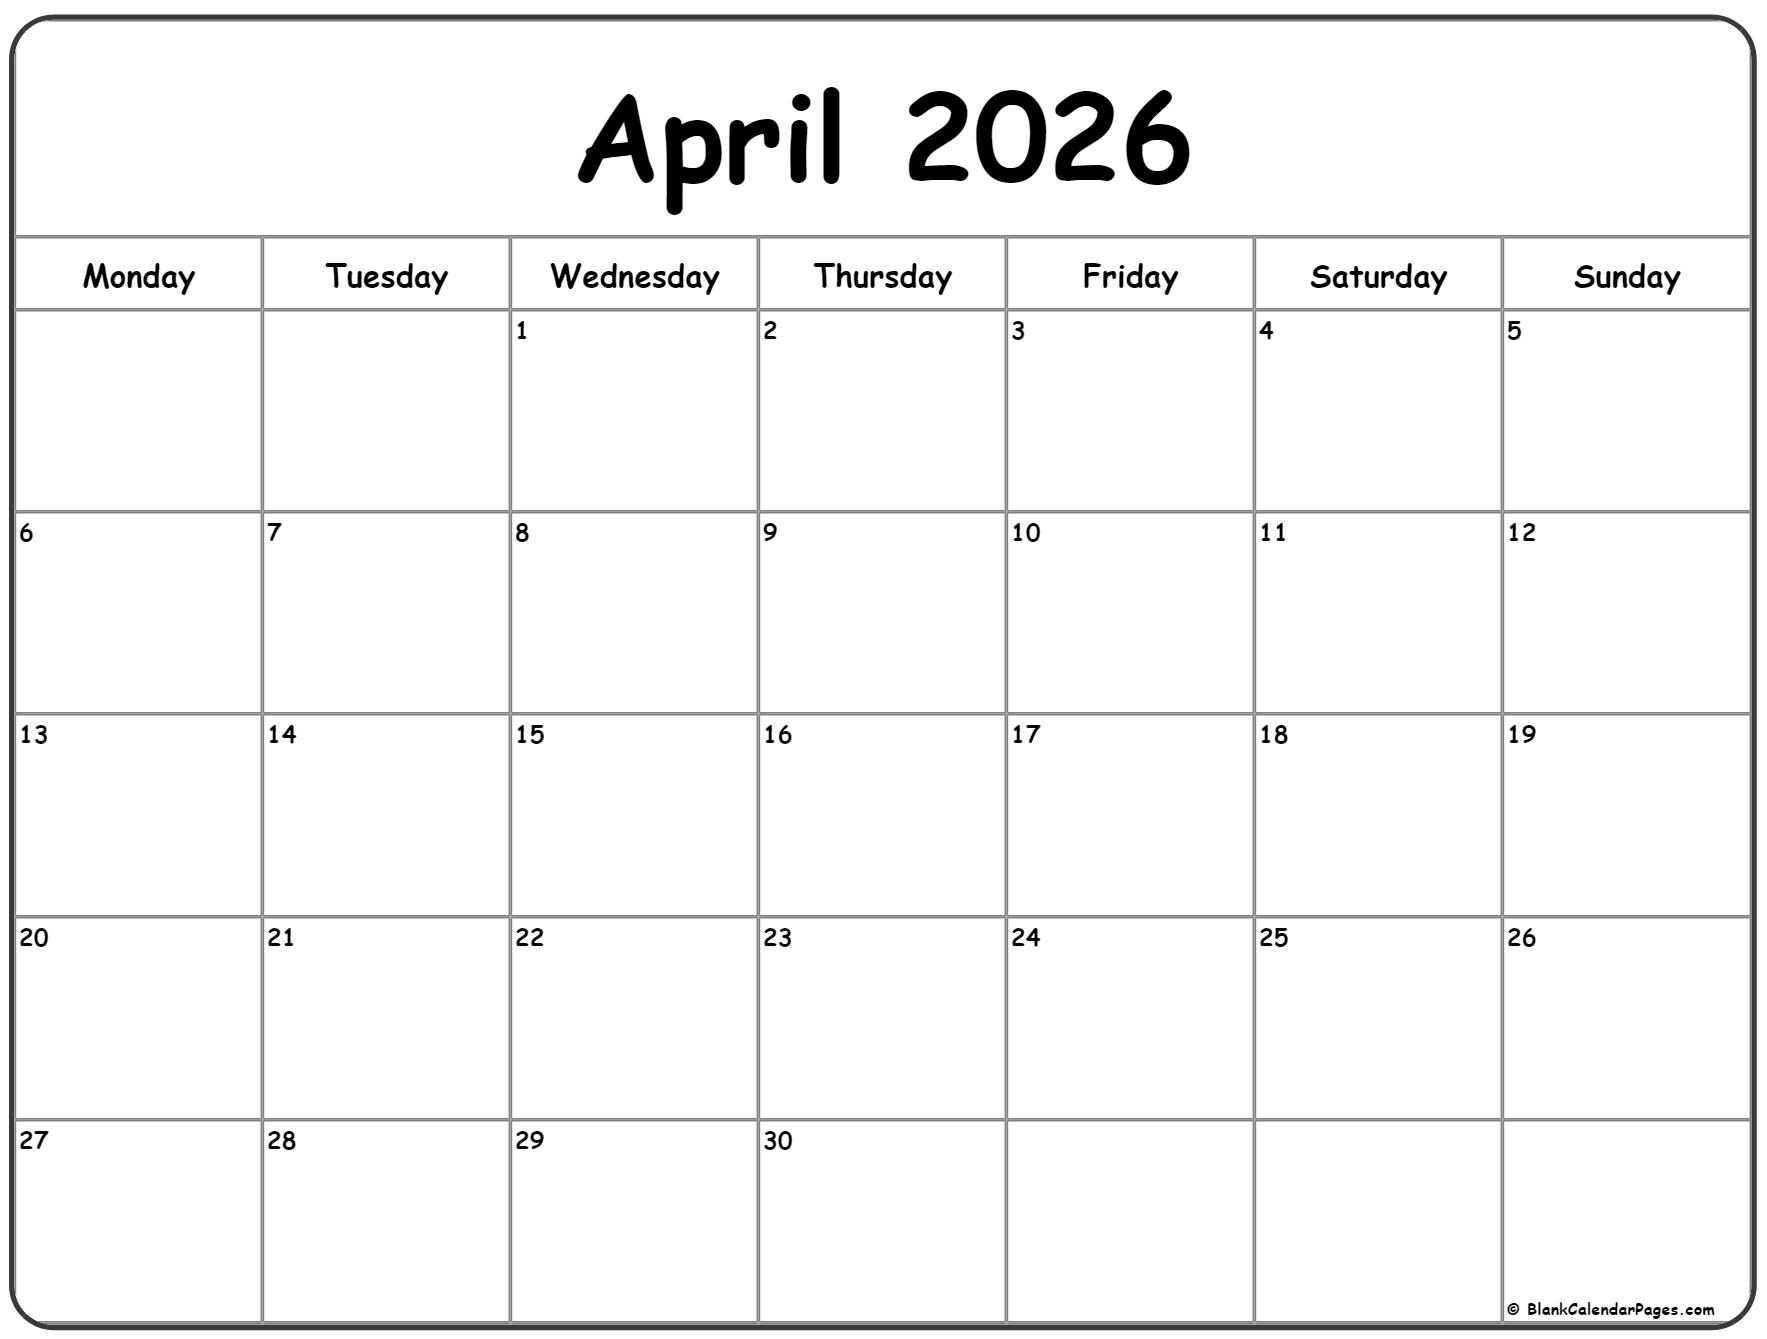 April 2026 Monday calendar. Monday to Sunday